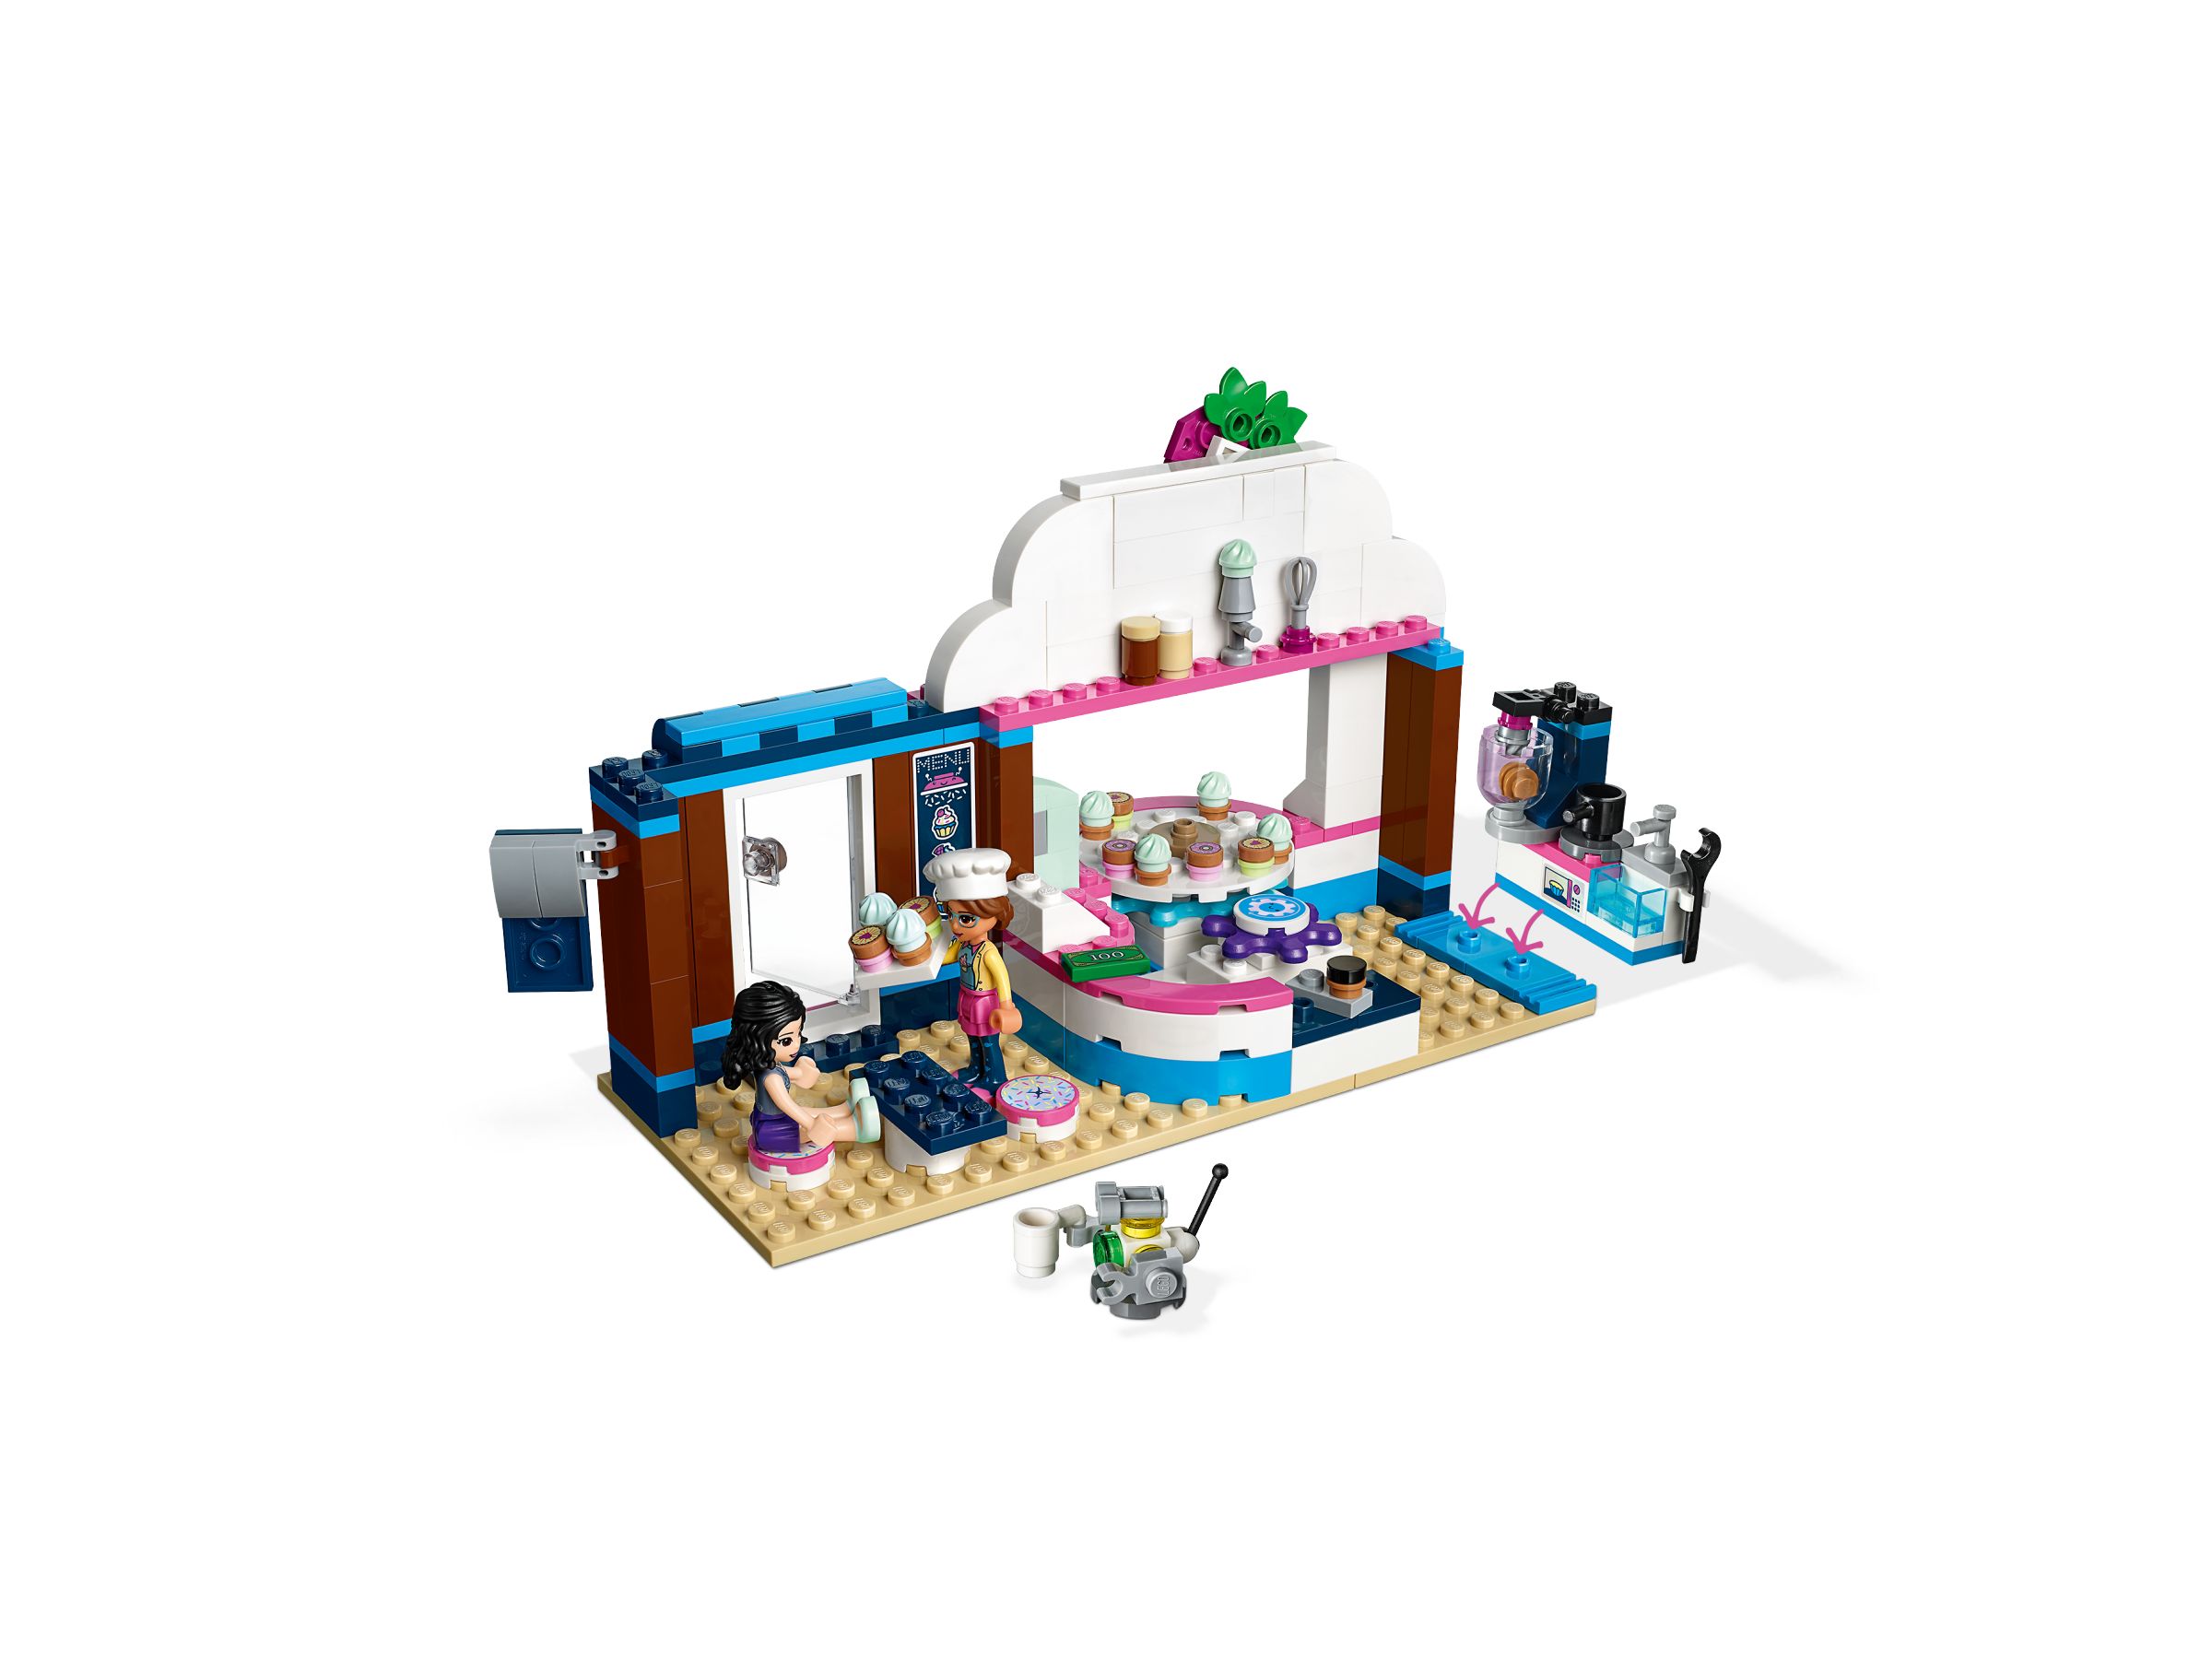 LEGO Friends 41366 Olivias Cupcake-Café LEGO_41366_alt6.jpg